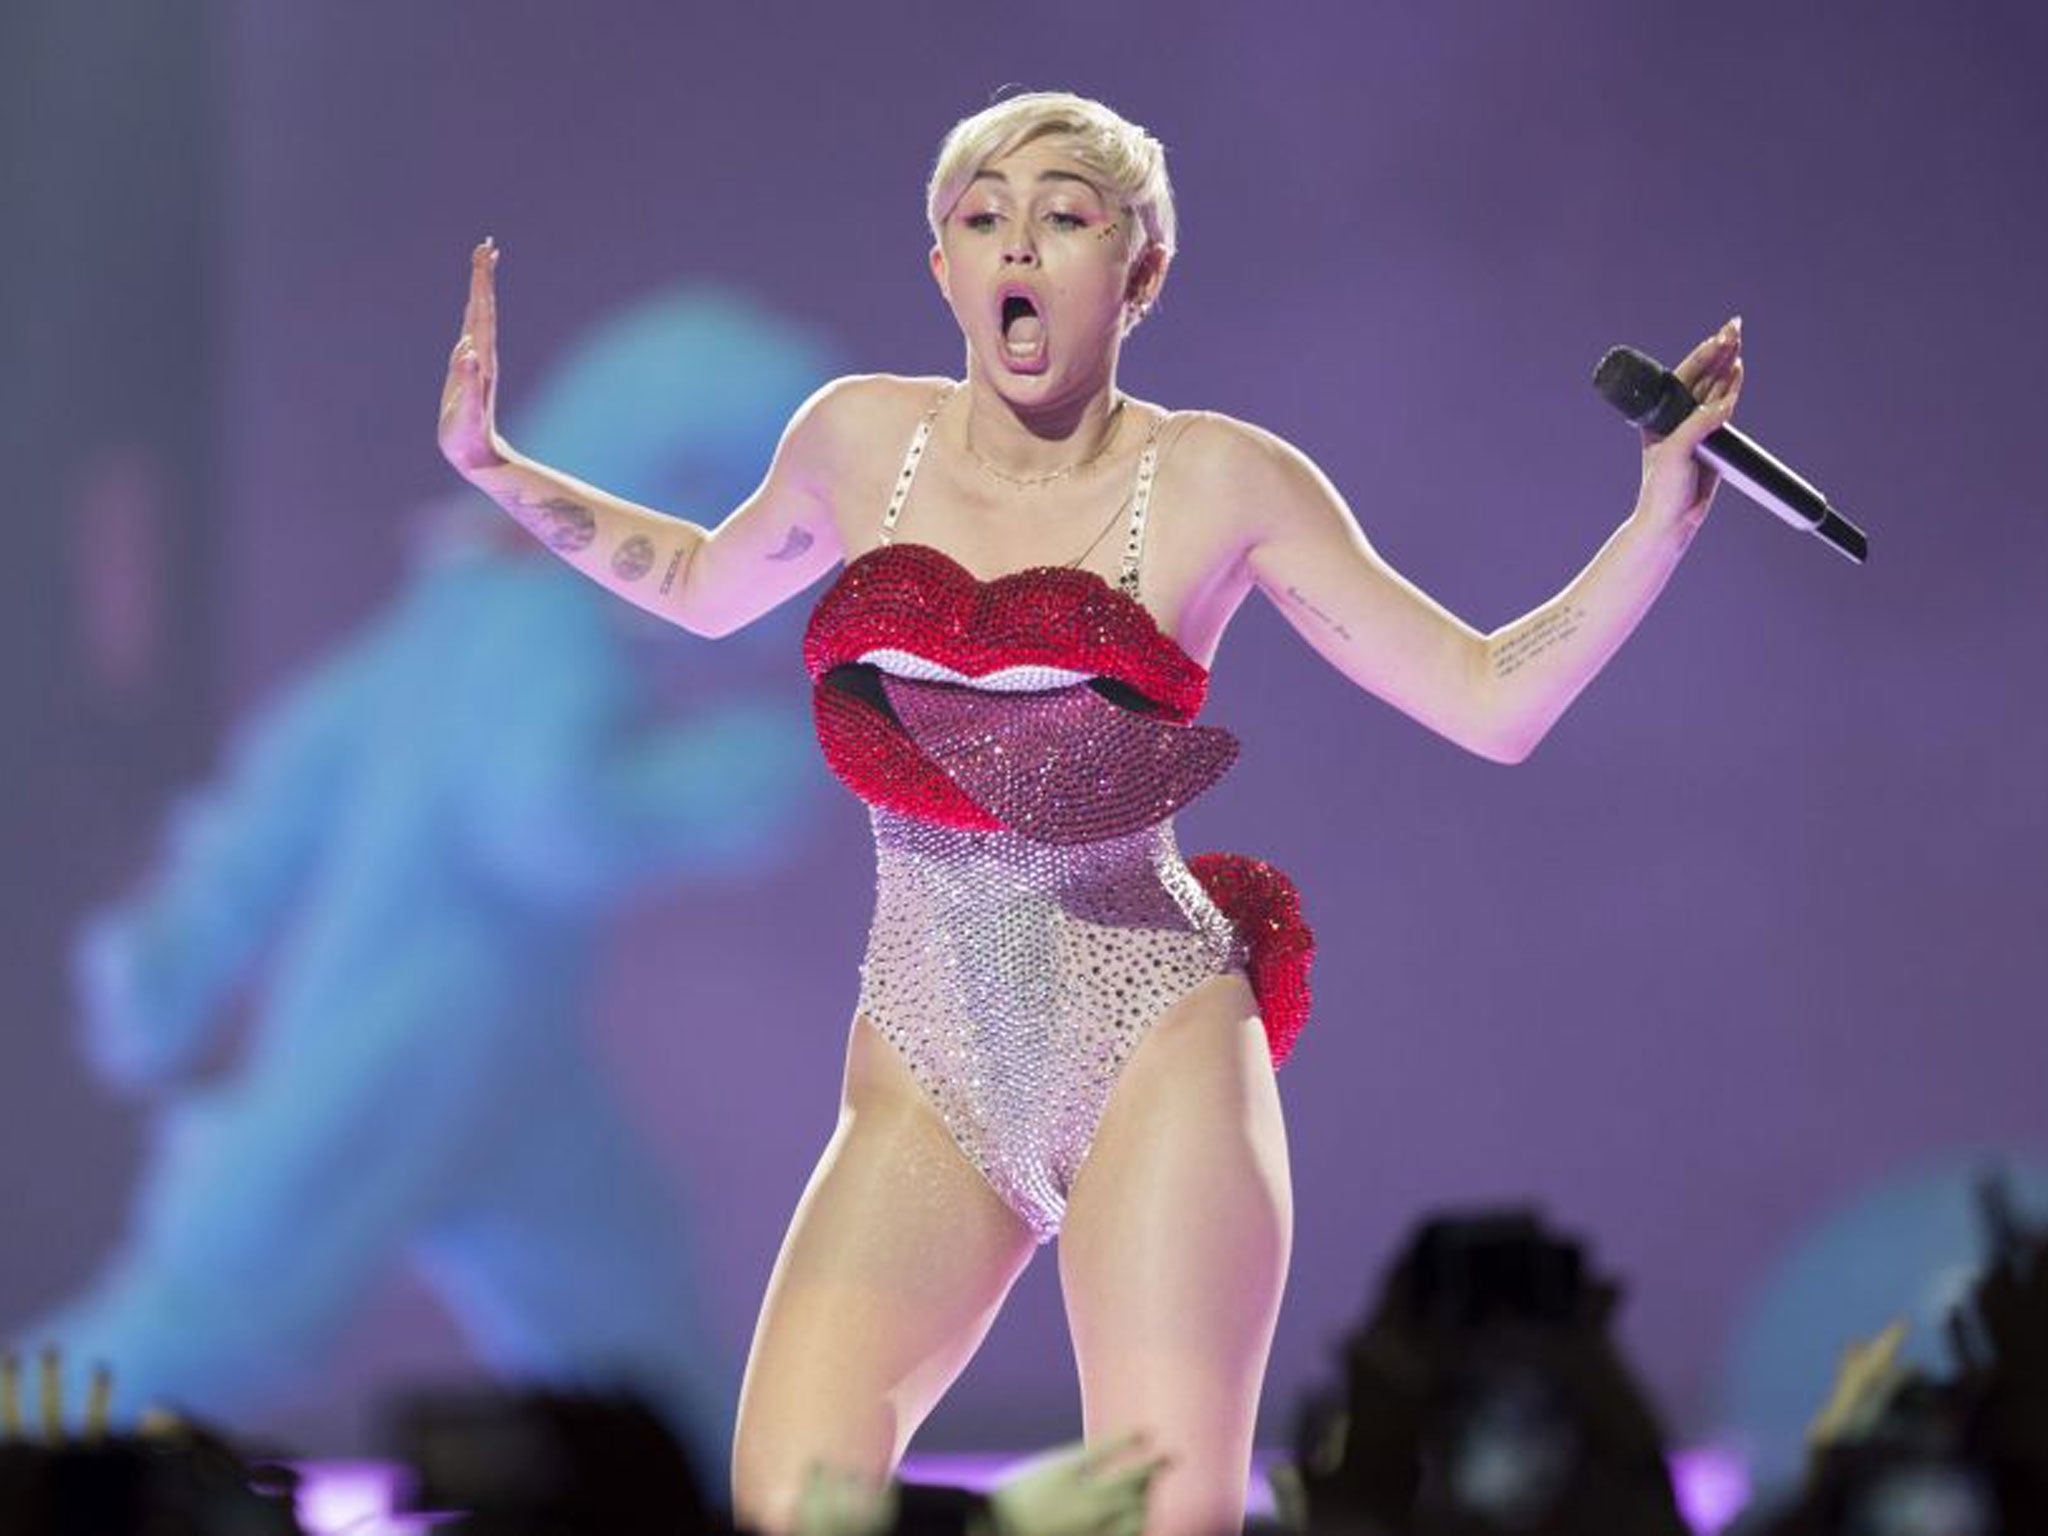 Best of Miley cyrus porn look alike